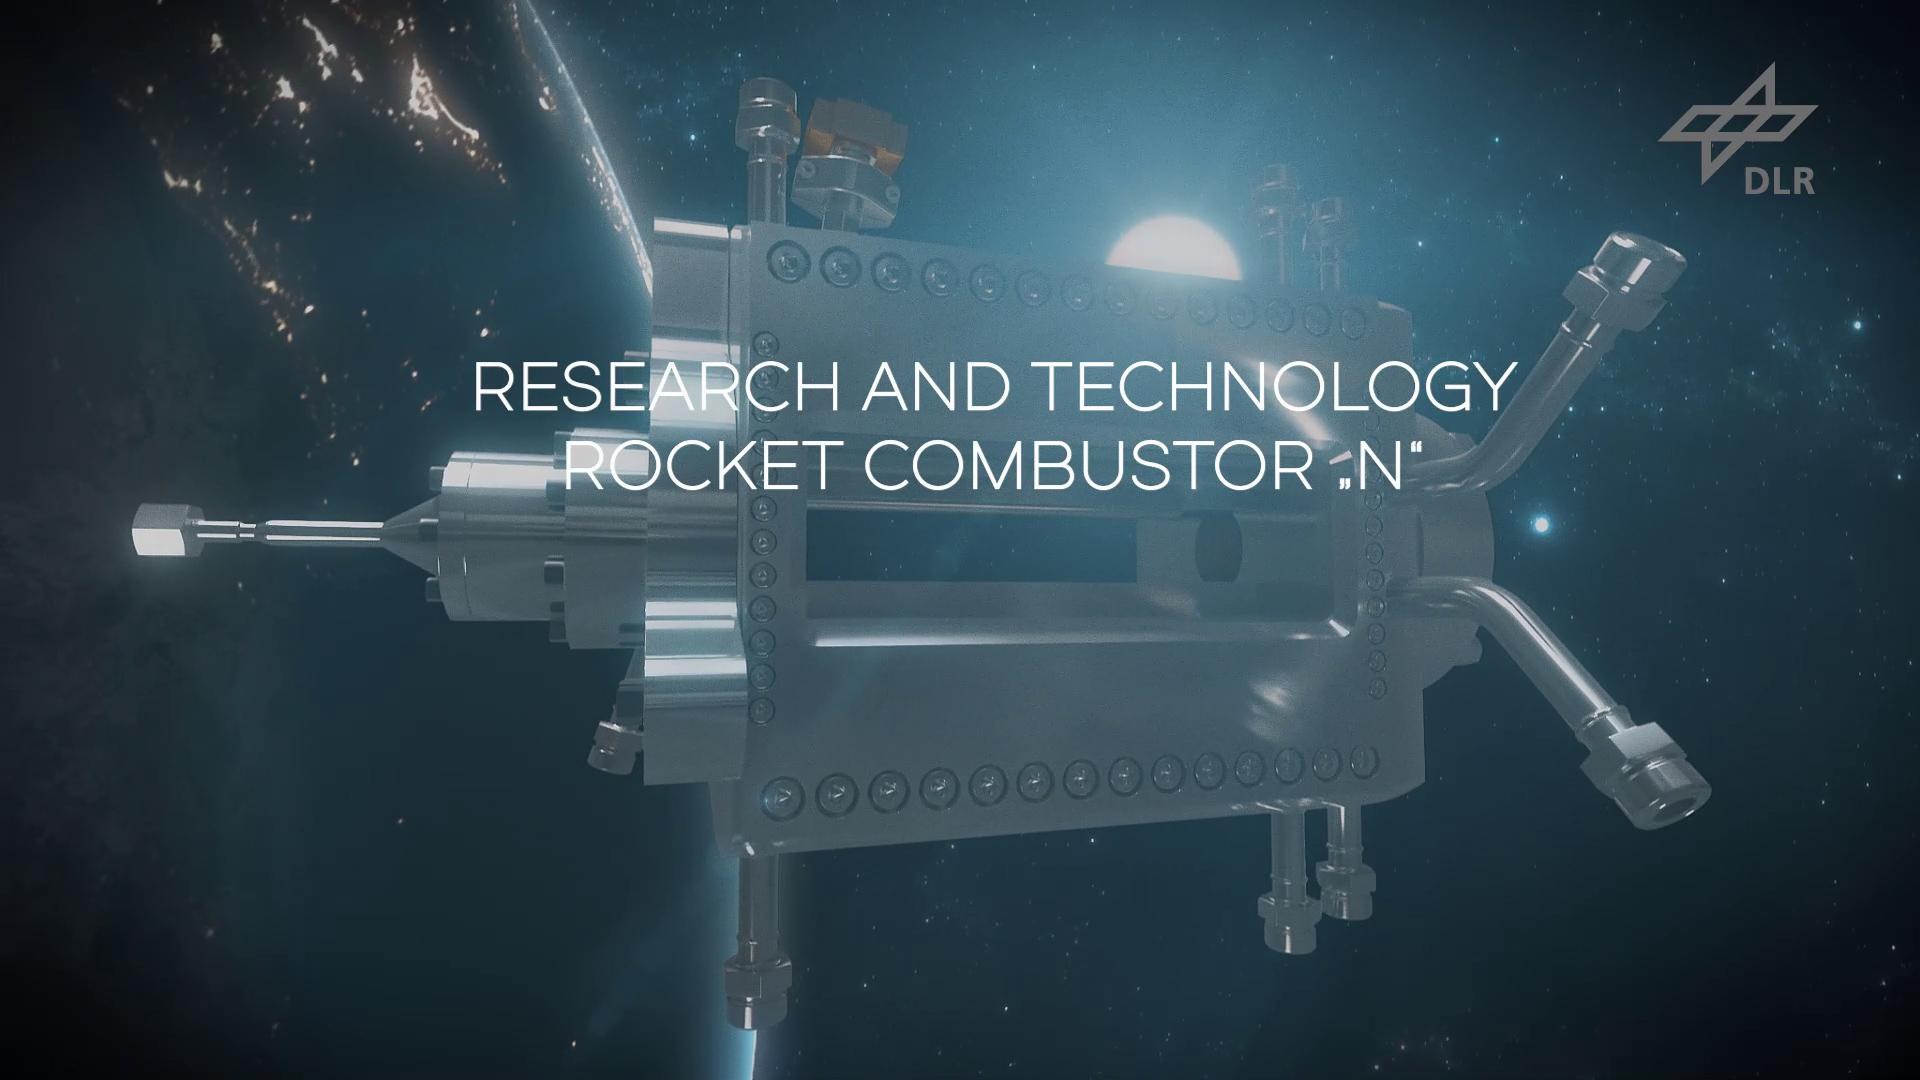 Standbild: DLR entwickelt neues Forschungsbrennkammer für Raketentriebwerke